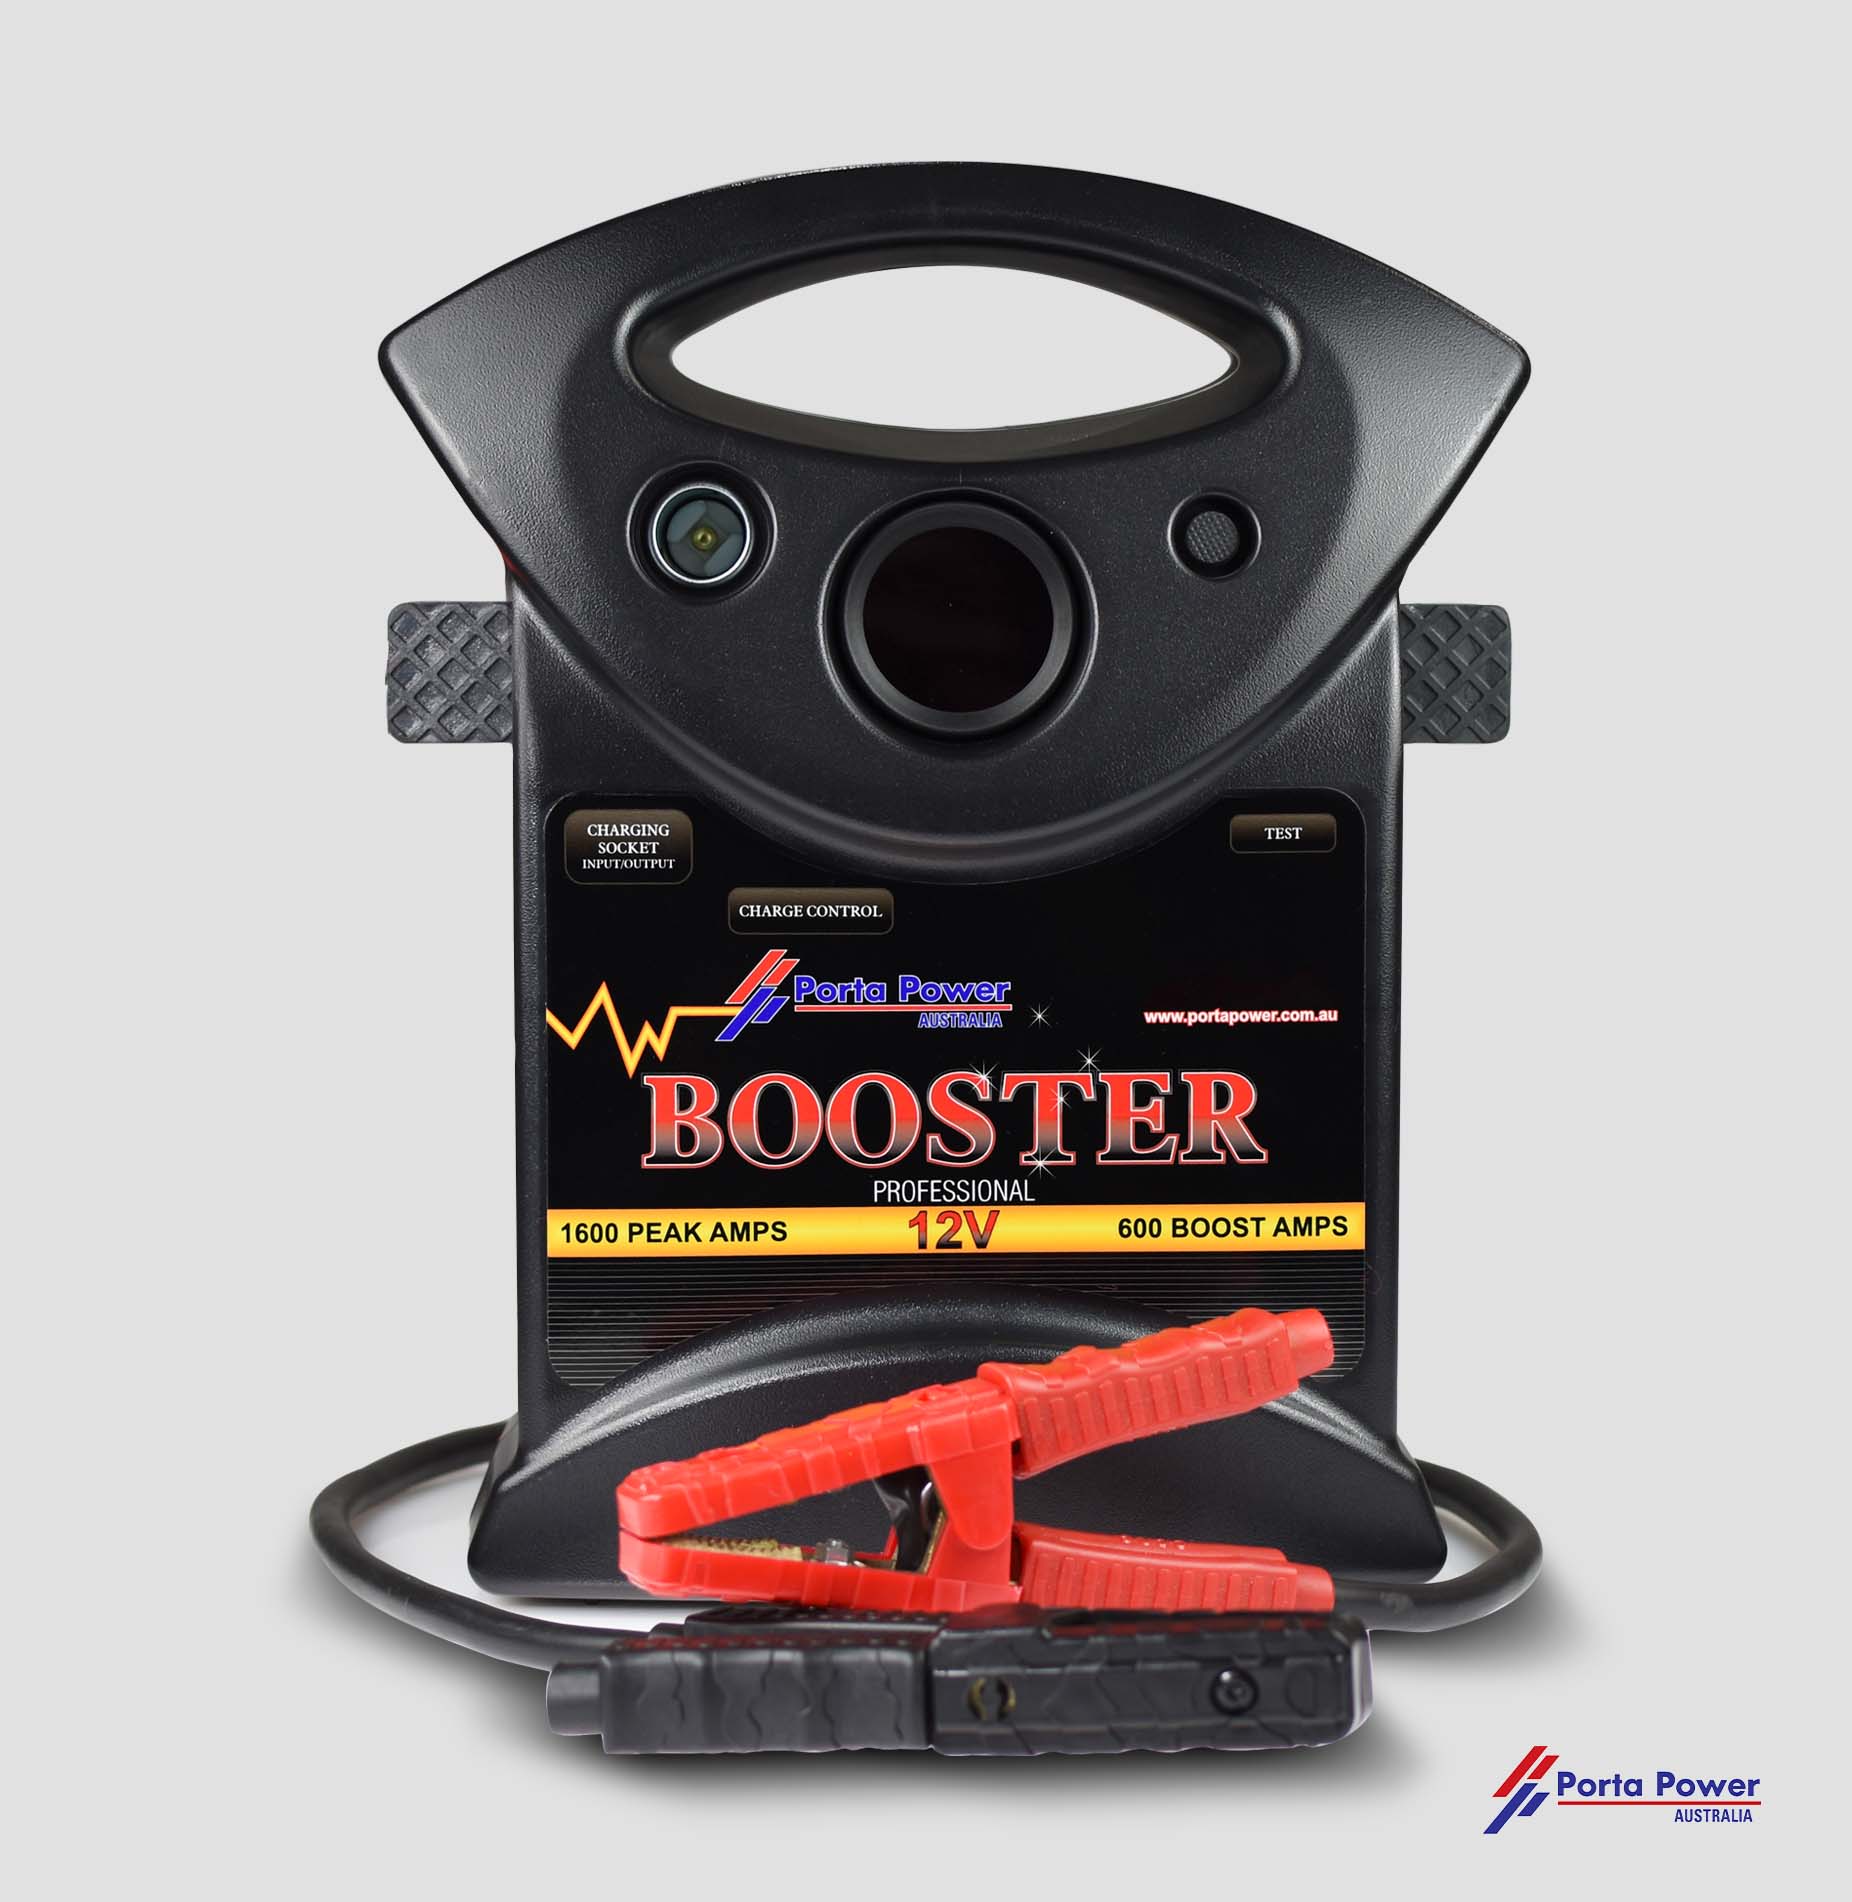 LS 3500 – 12v Booster – 1600 Peak Amps